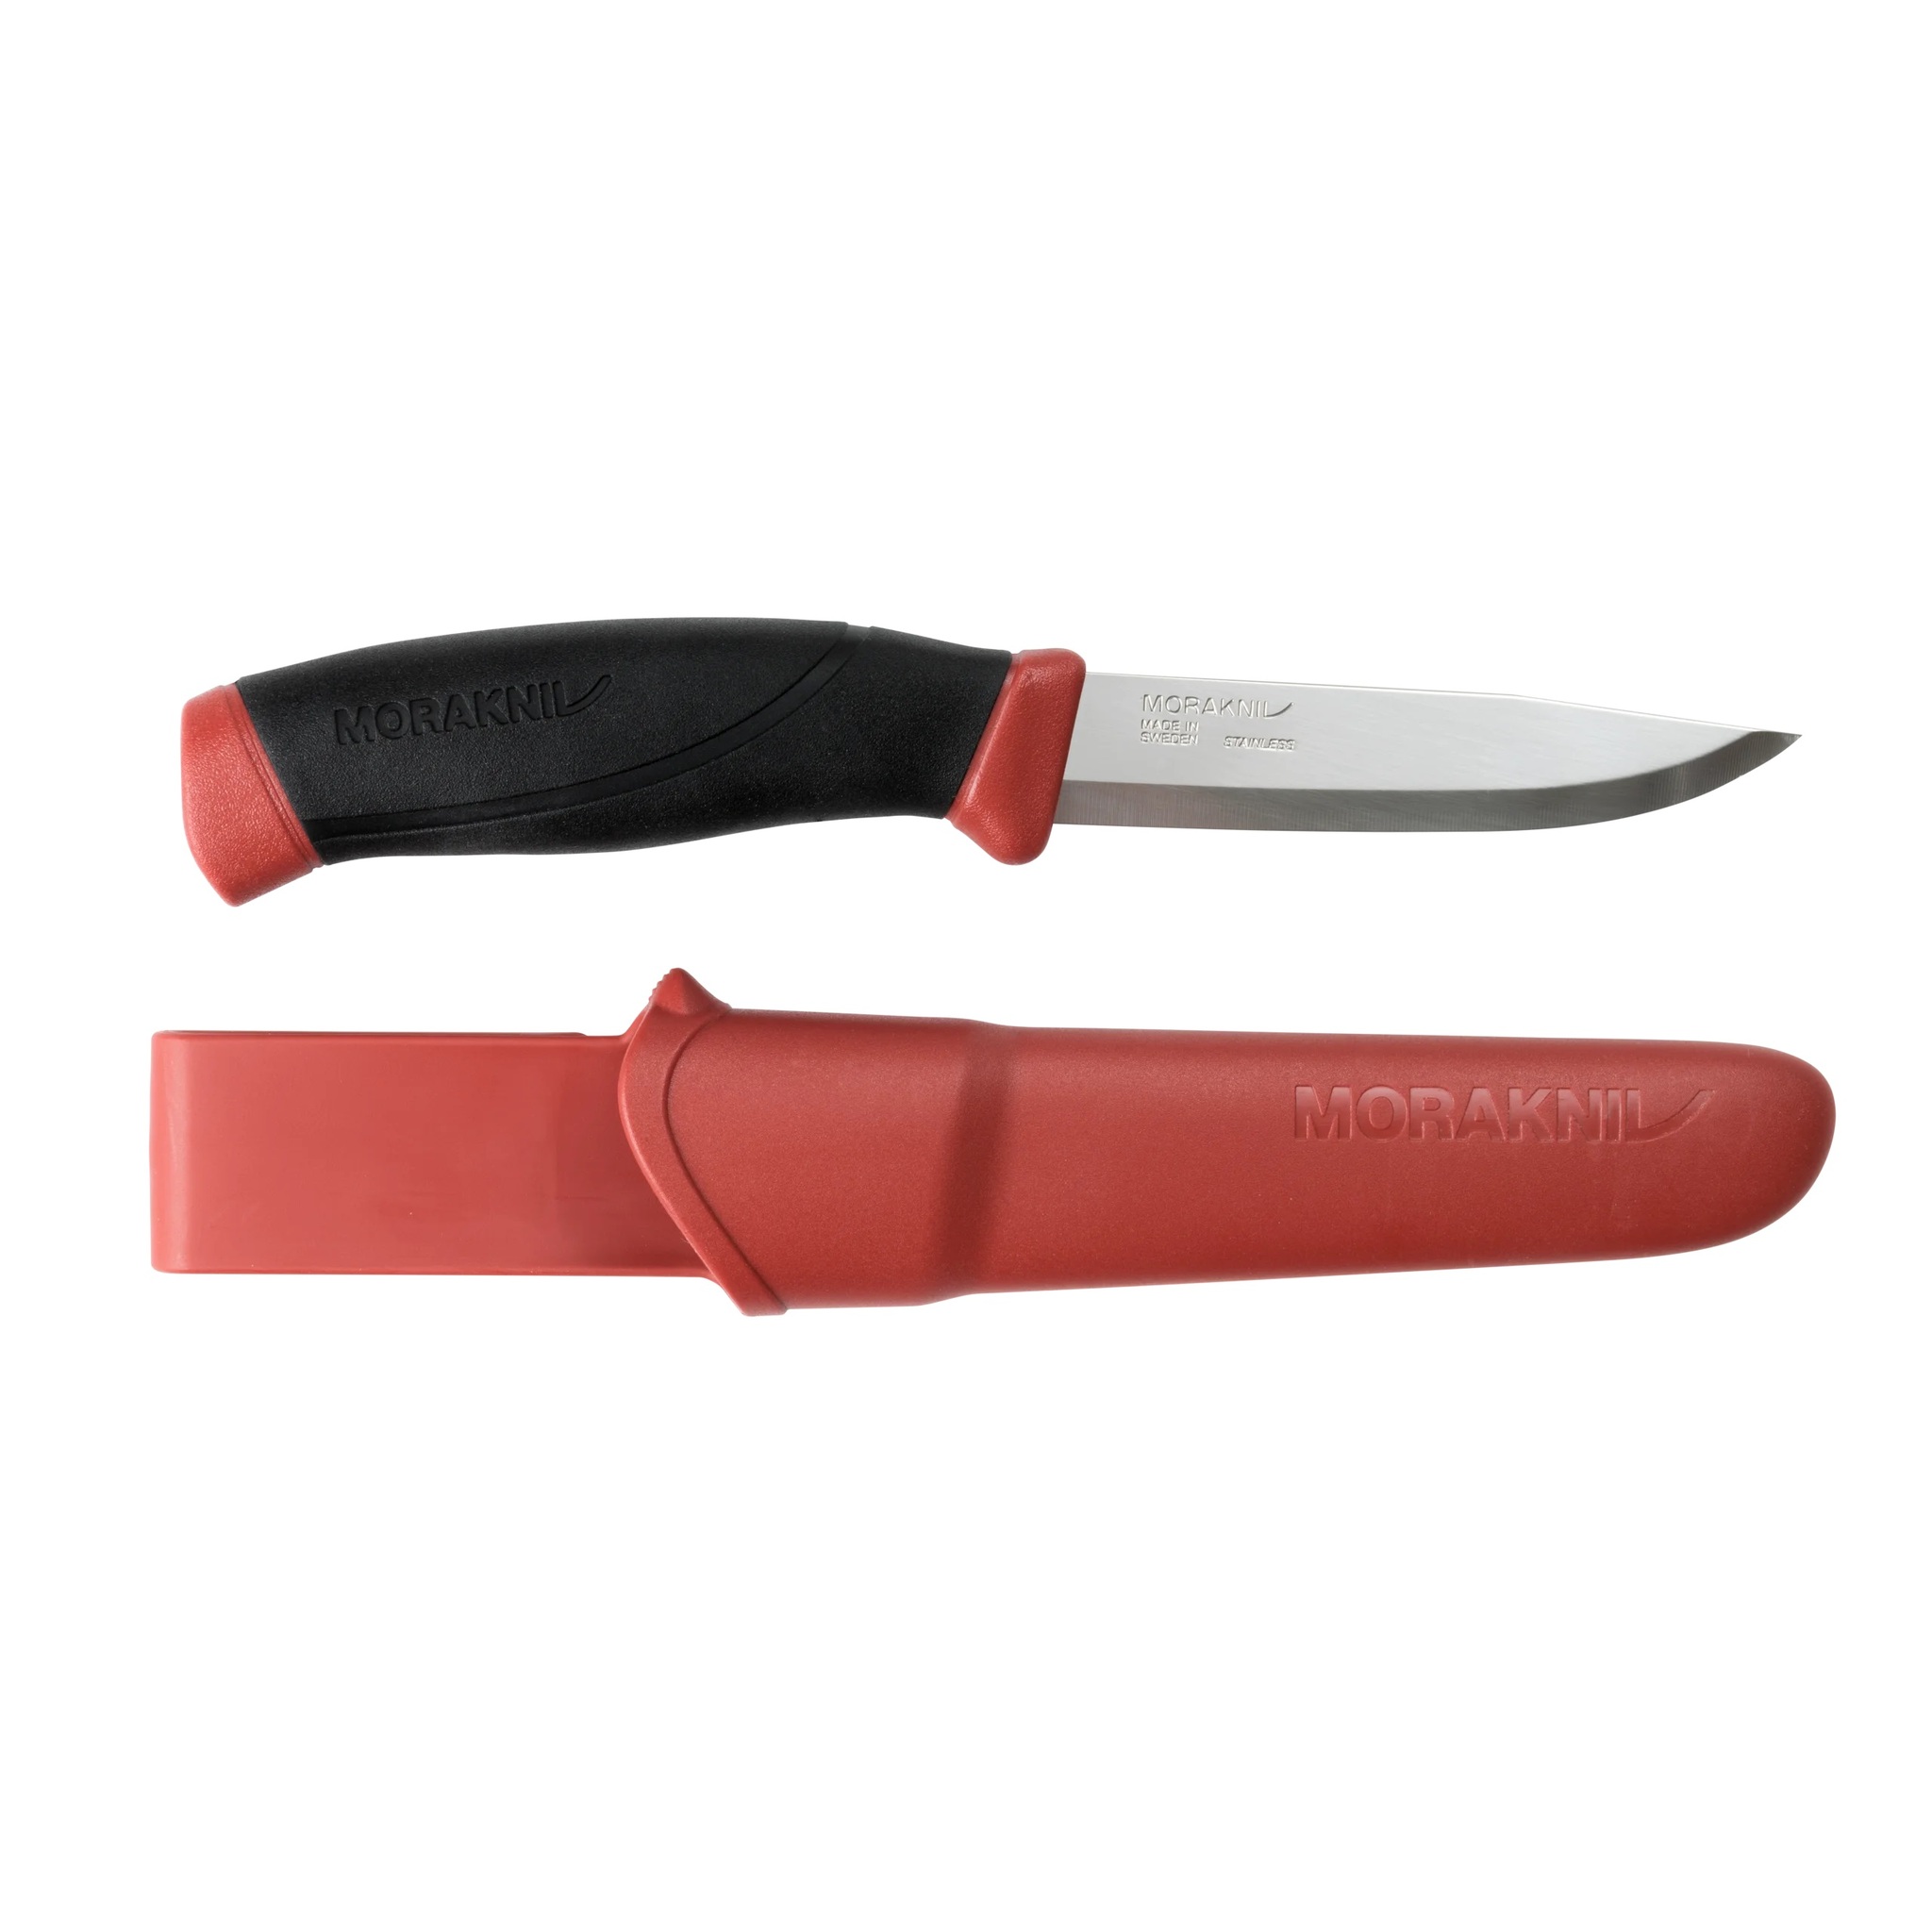 Нож с фиксированным лезвием Morakniv Companion, сталь Sandvik 12C27, рукоять резина, Dala red - фото 3